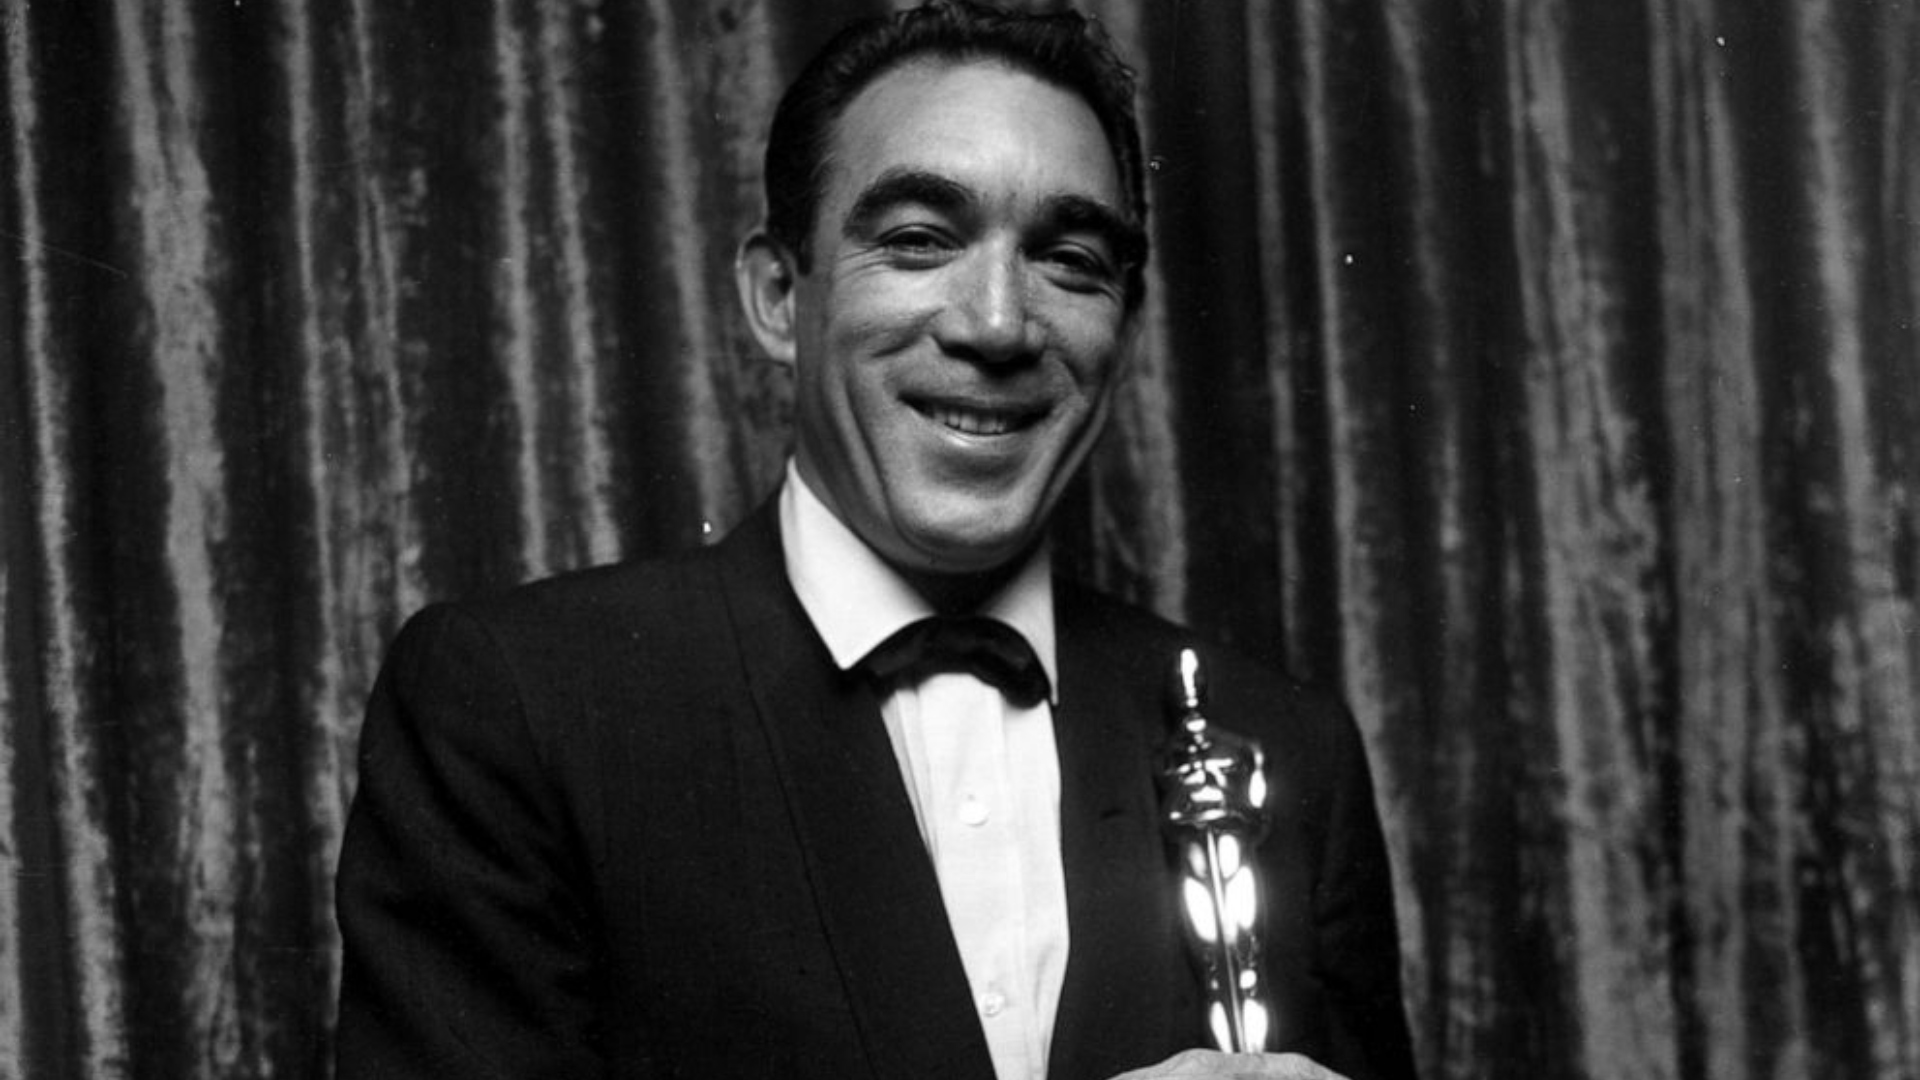 Los latinos comenzaron a ganar presencia. Anthony Quinn se llevó el Oscar a Mejor Actor de Reparto en 1953 y 1957 por '¡Viva Zapata!' y 'Lust for Life', respectivamente. En 1952, Rita Moreno triunfó en la misma categoría gracias a 'West Side Story'.